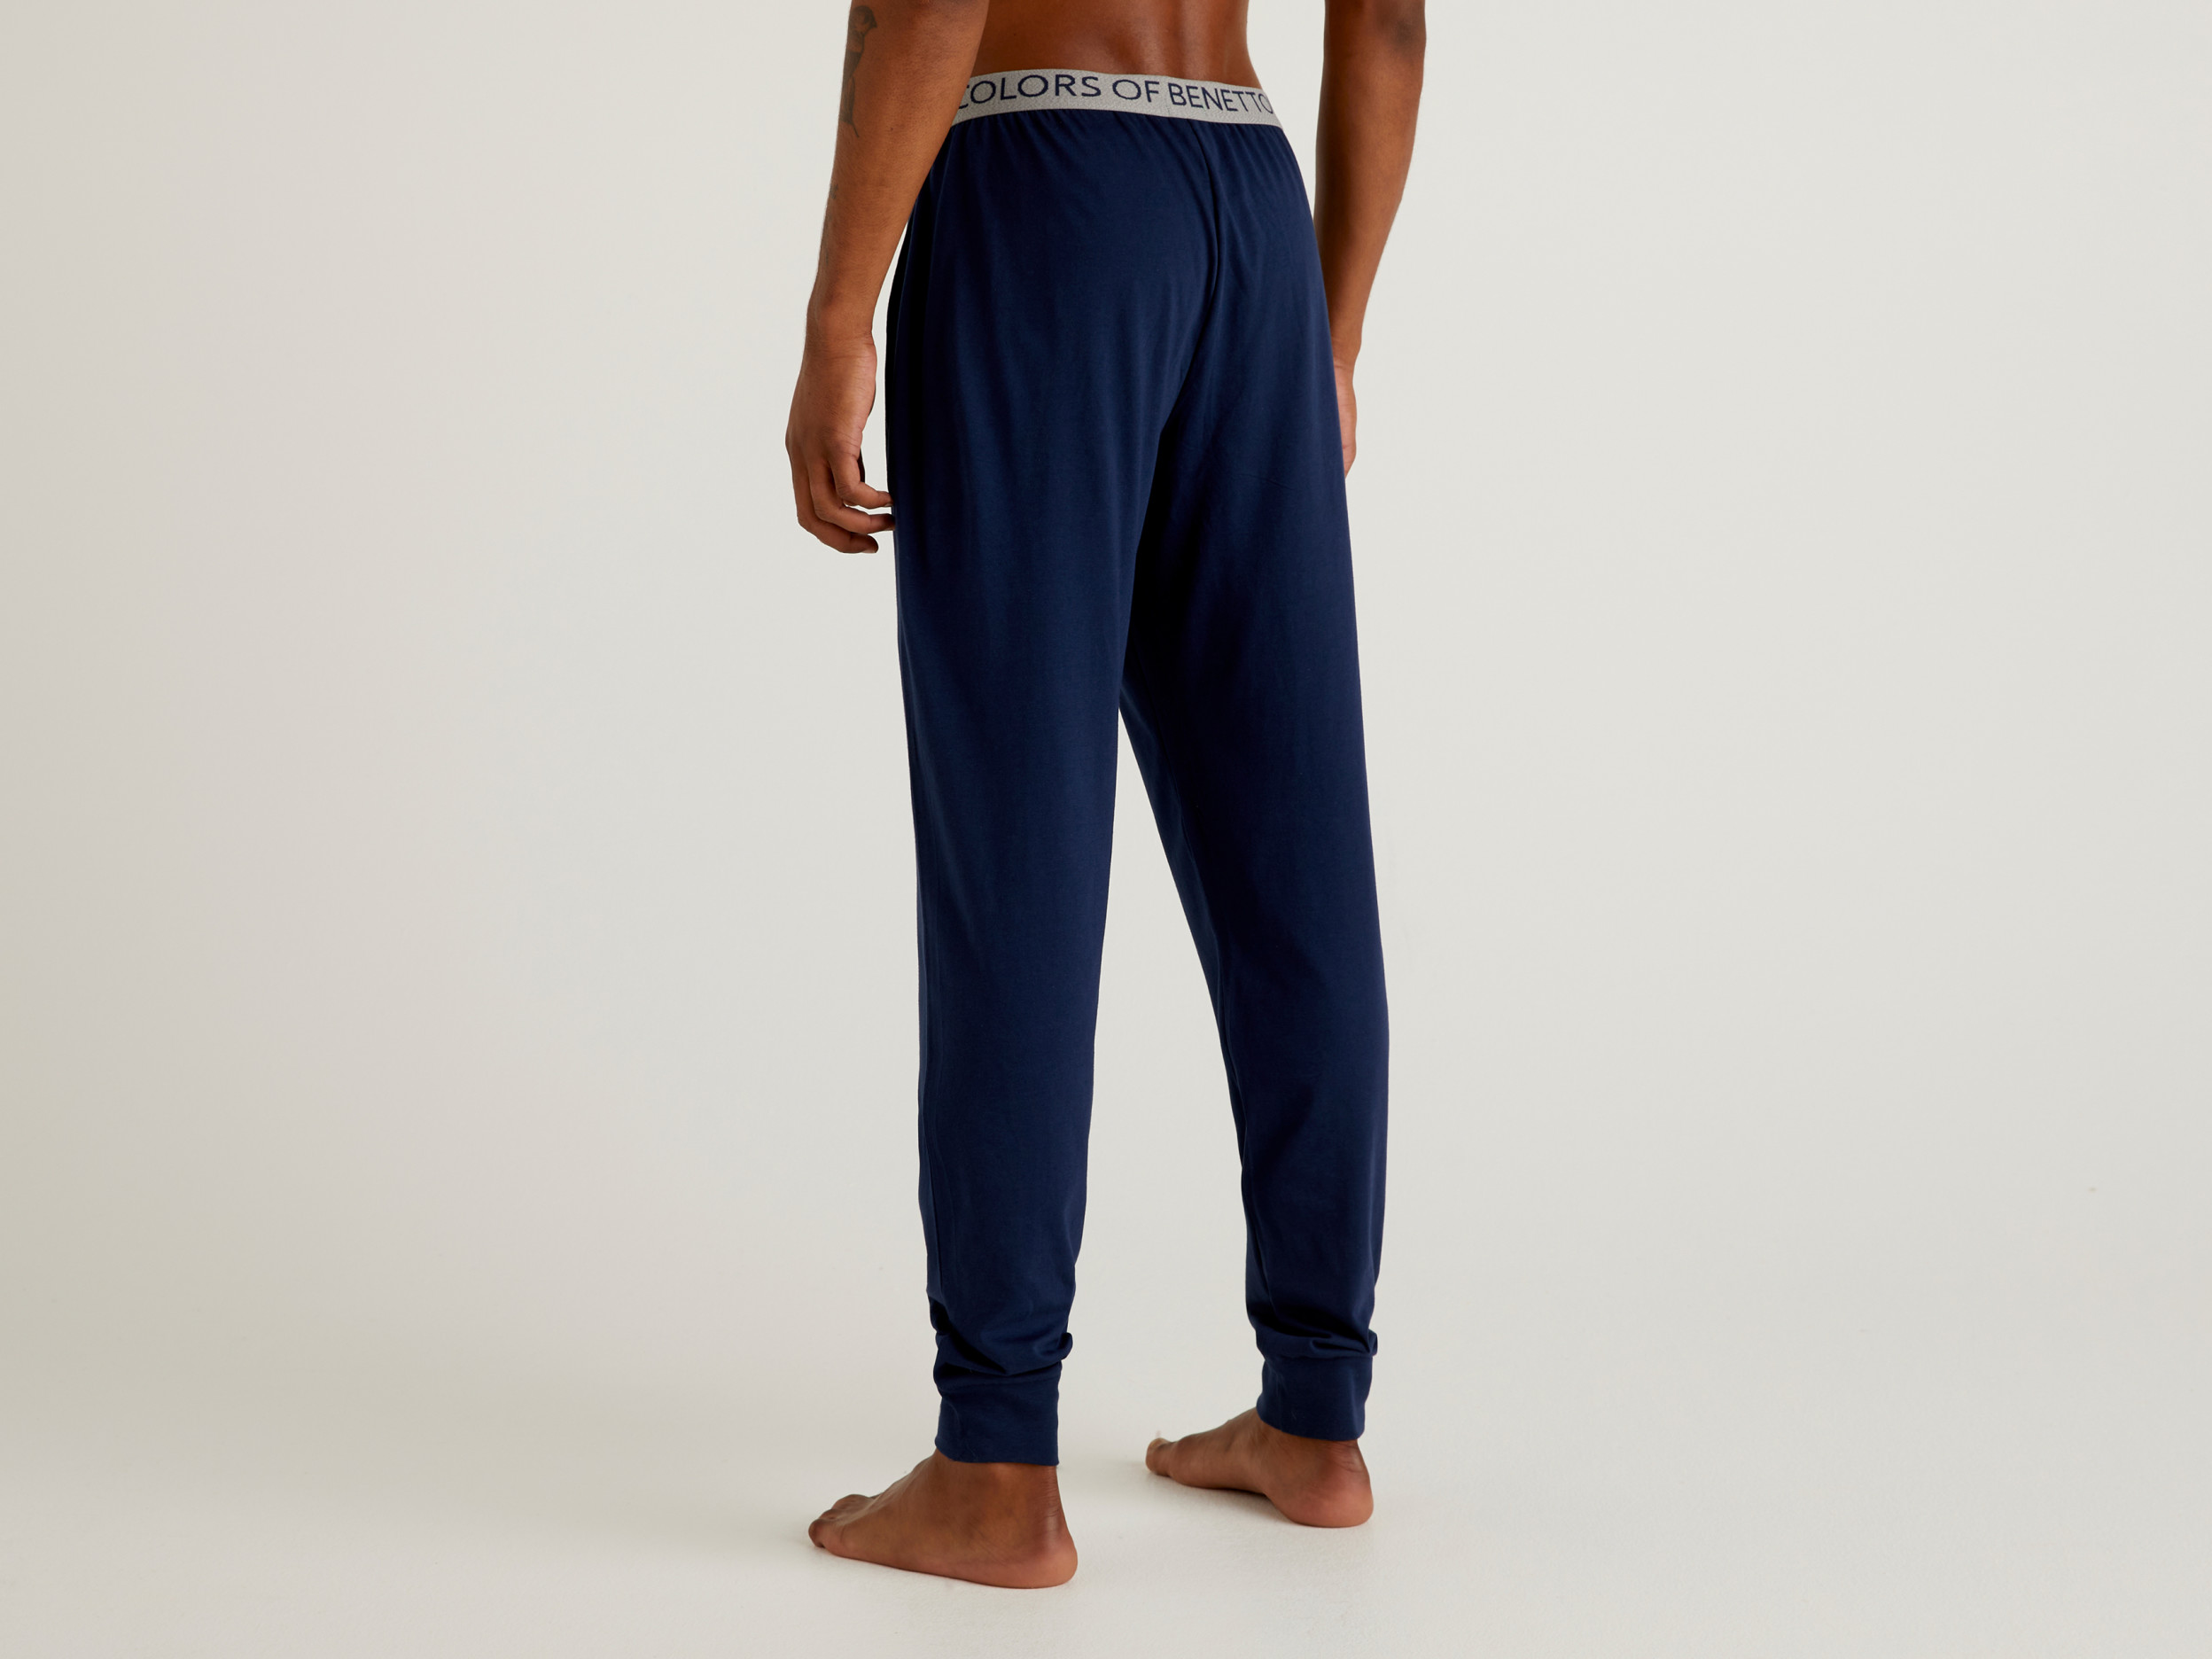 Benetton, Trousers In Organic Cotton, Taglia L, Dark Blue, Men